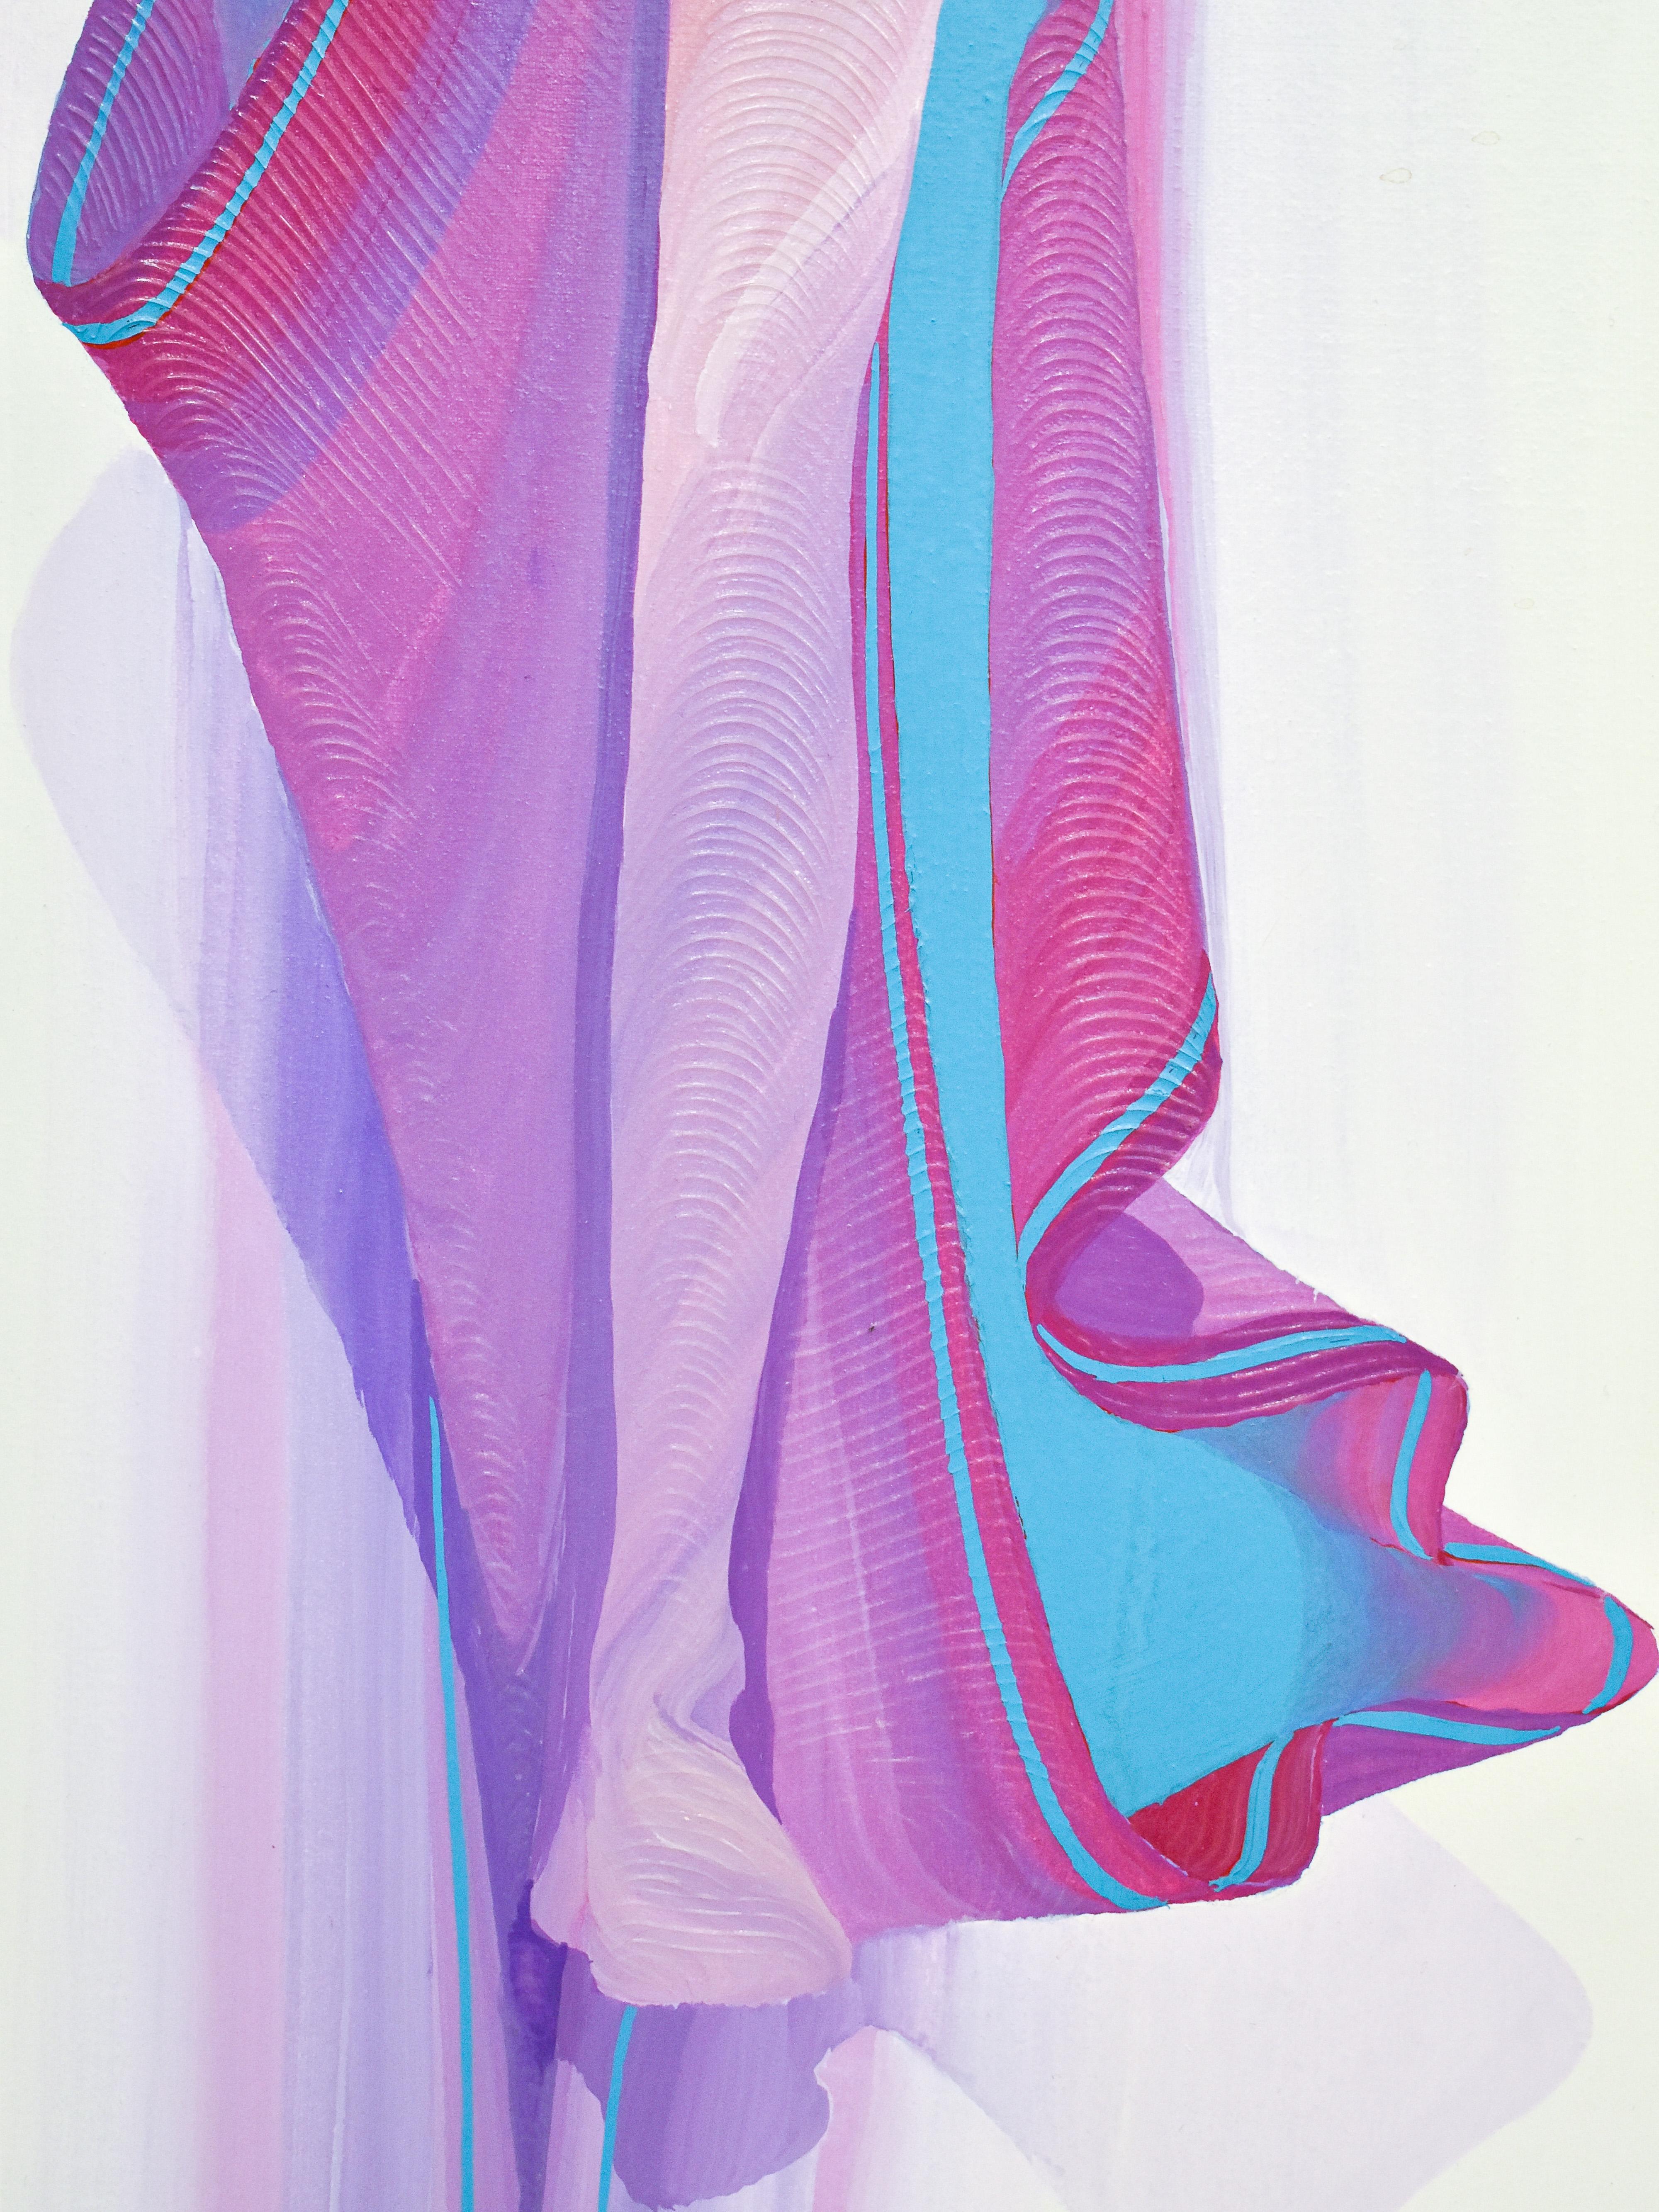 Femme en robe violette - Oil paint on canvas - Jean Loup Gasnier For Sale 2